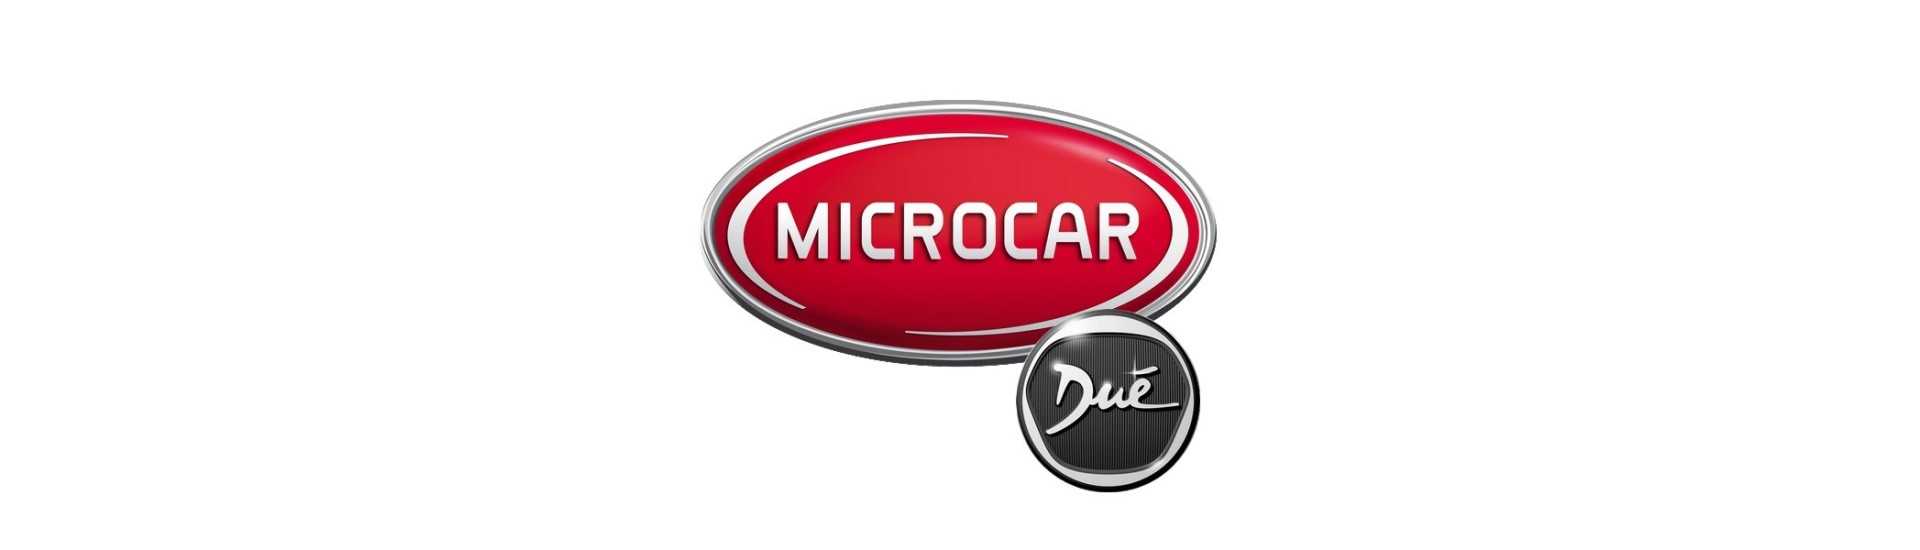 Mejor kit de mantenimiento de coches sin permiso Microcar Dué